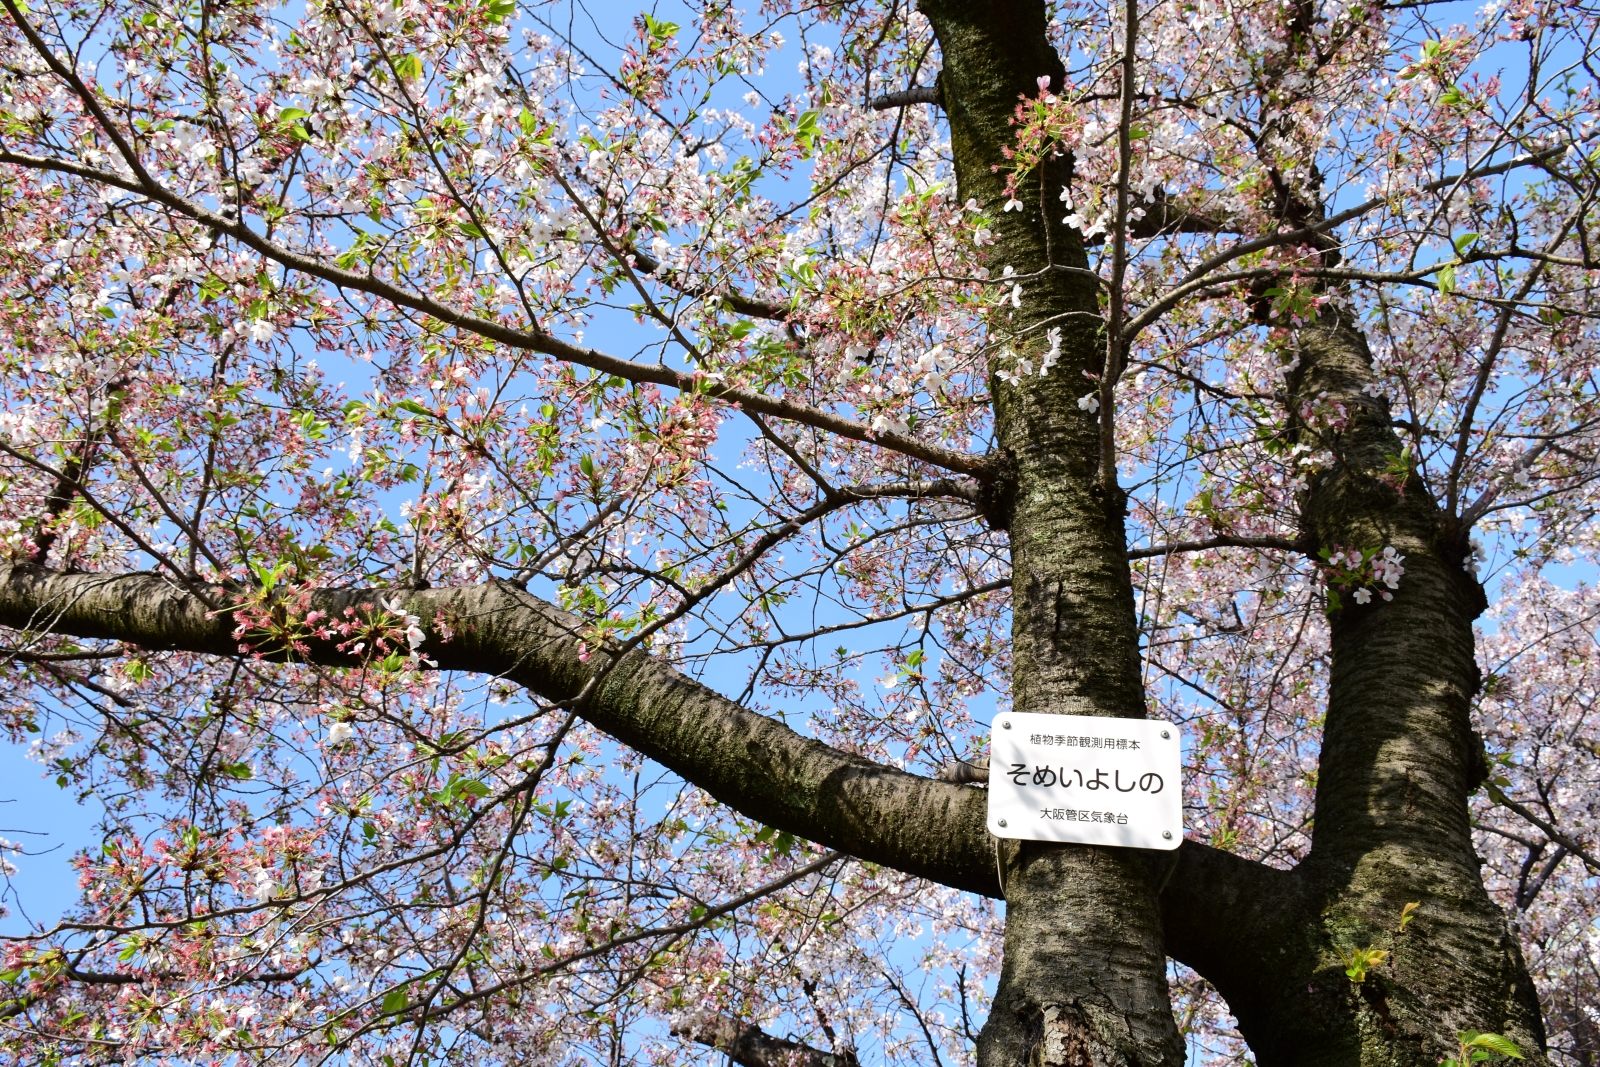 西の丸庭園の桜の標本木